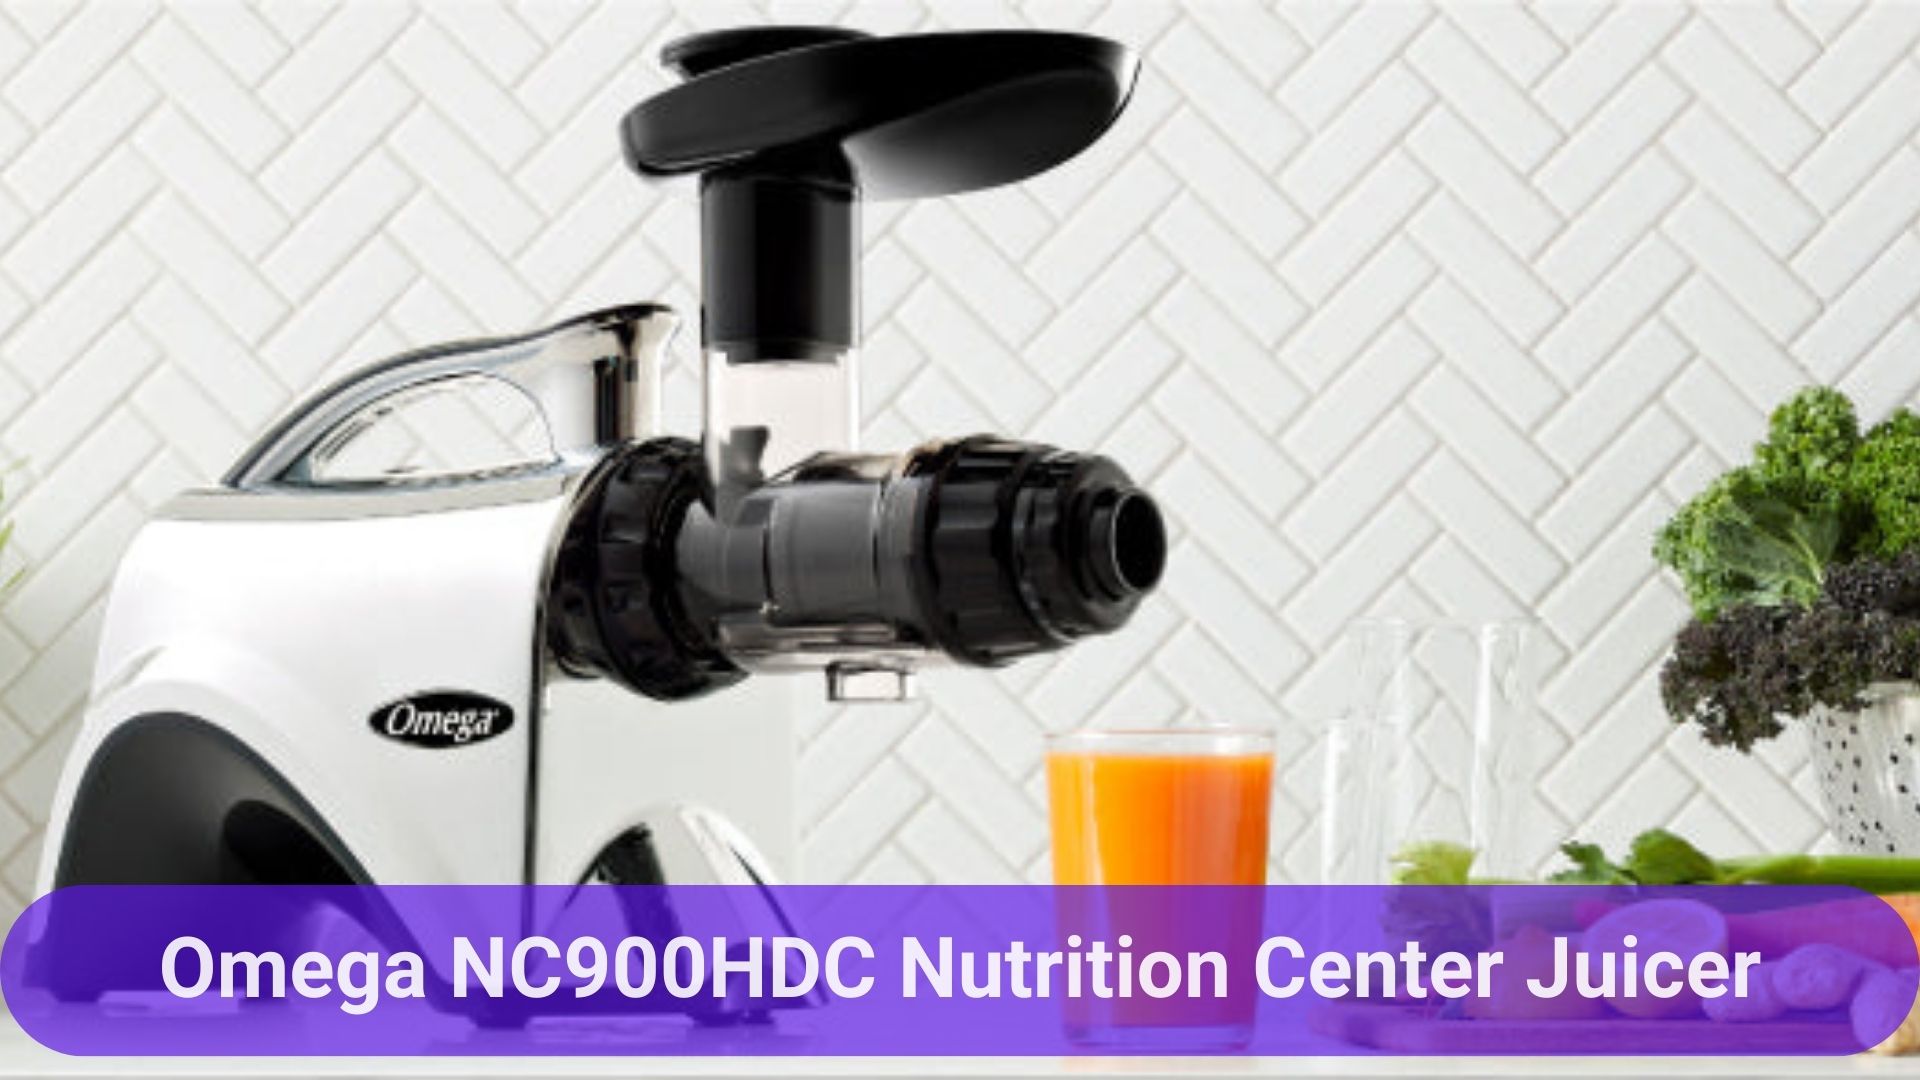 Omega NC900HDC Nutrition Center Juicer